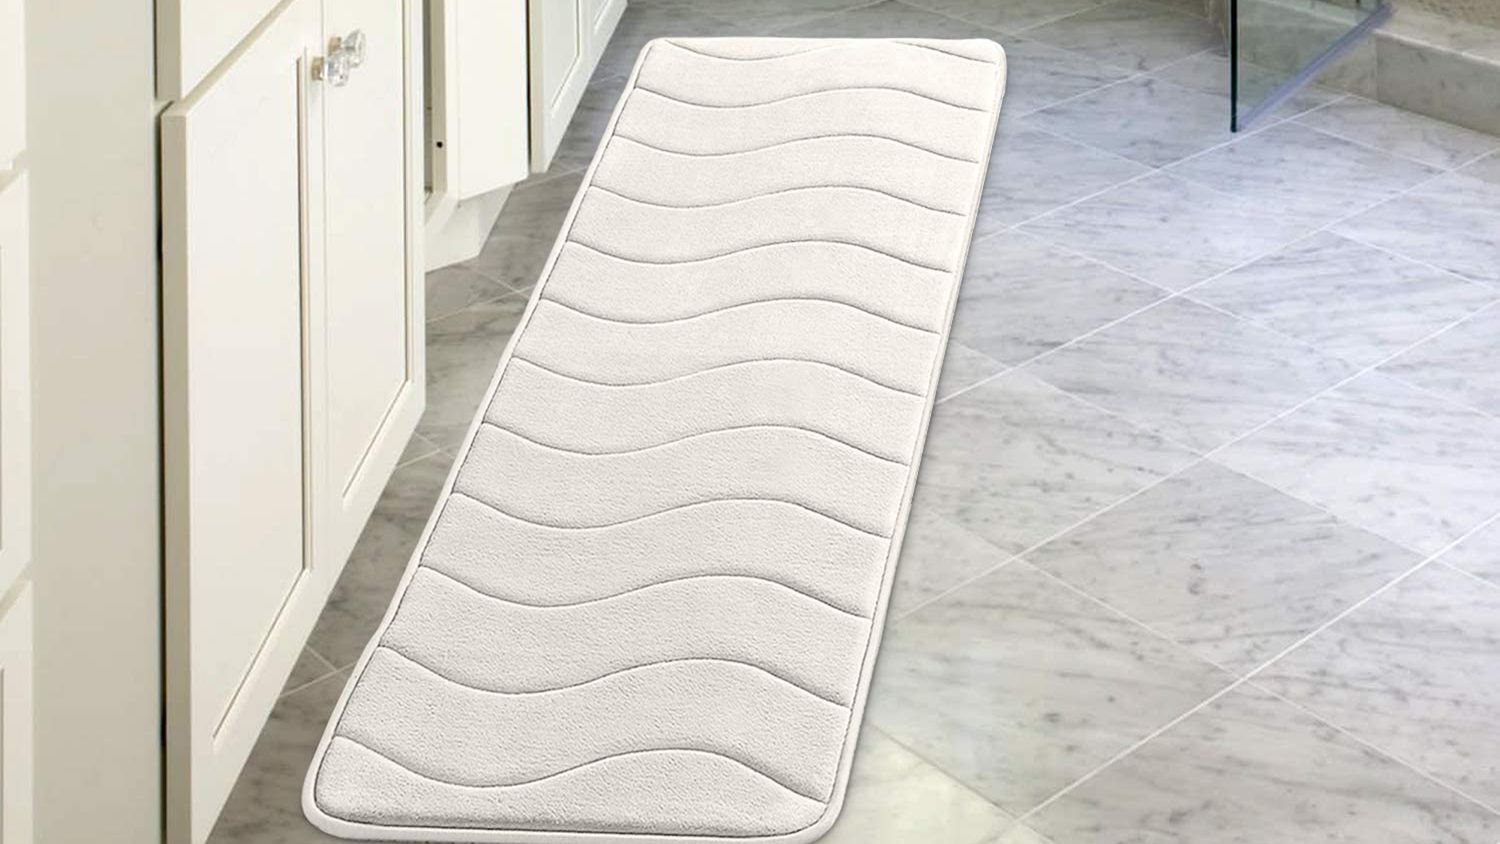 40x60cm / Details about   Memory Foam Bath Mat Non-Absorbent Super Cozy Velvet Bath Rug Carpet 